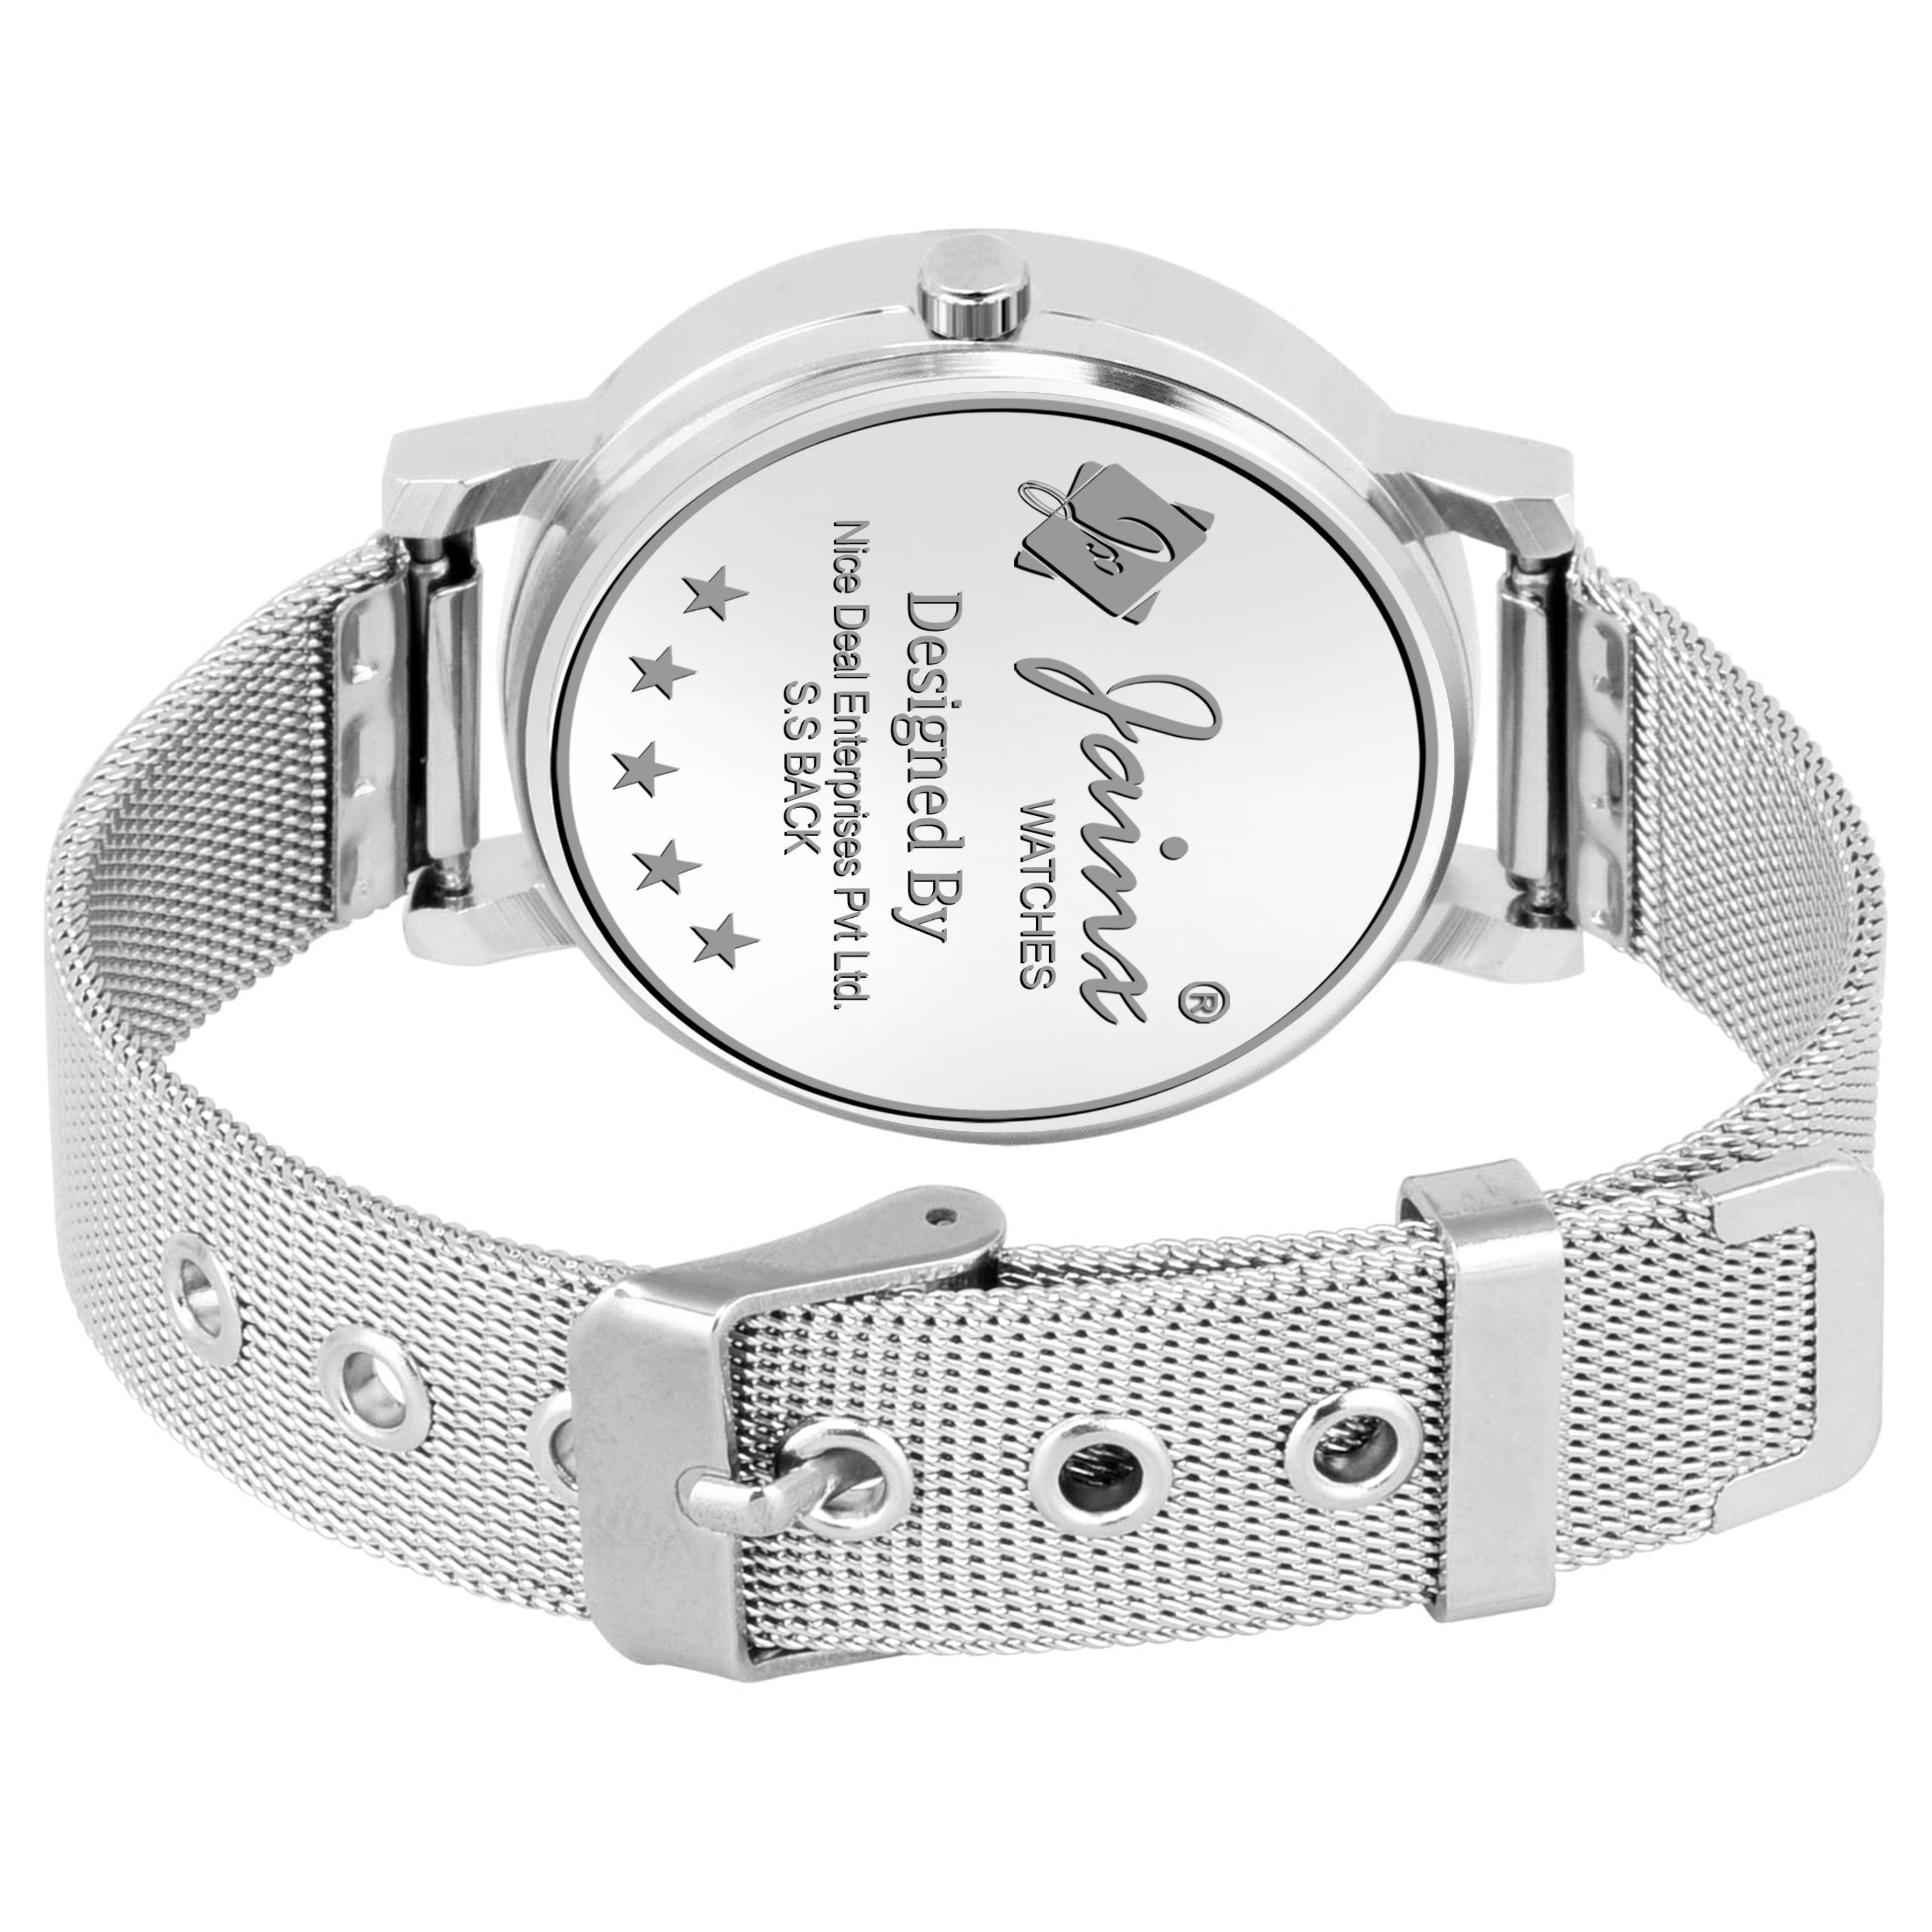 Jainx Blue Dial Silver Mesh Chain Analog Wrist Watch for Women - JW8556 - Jainx Store